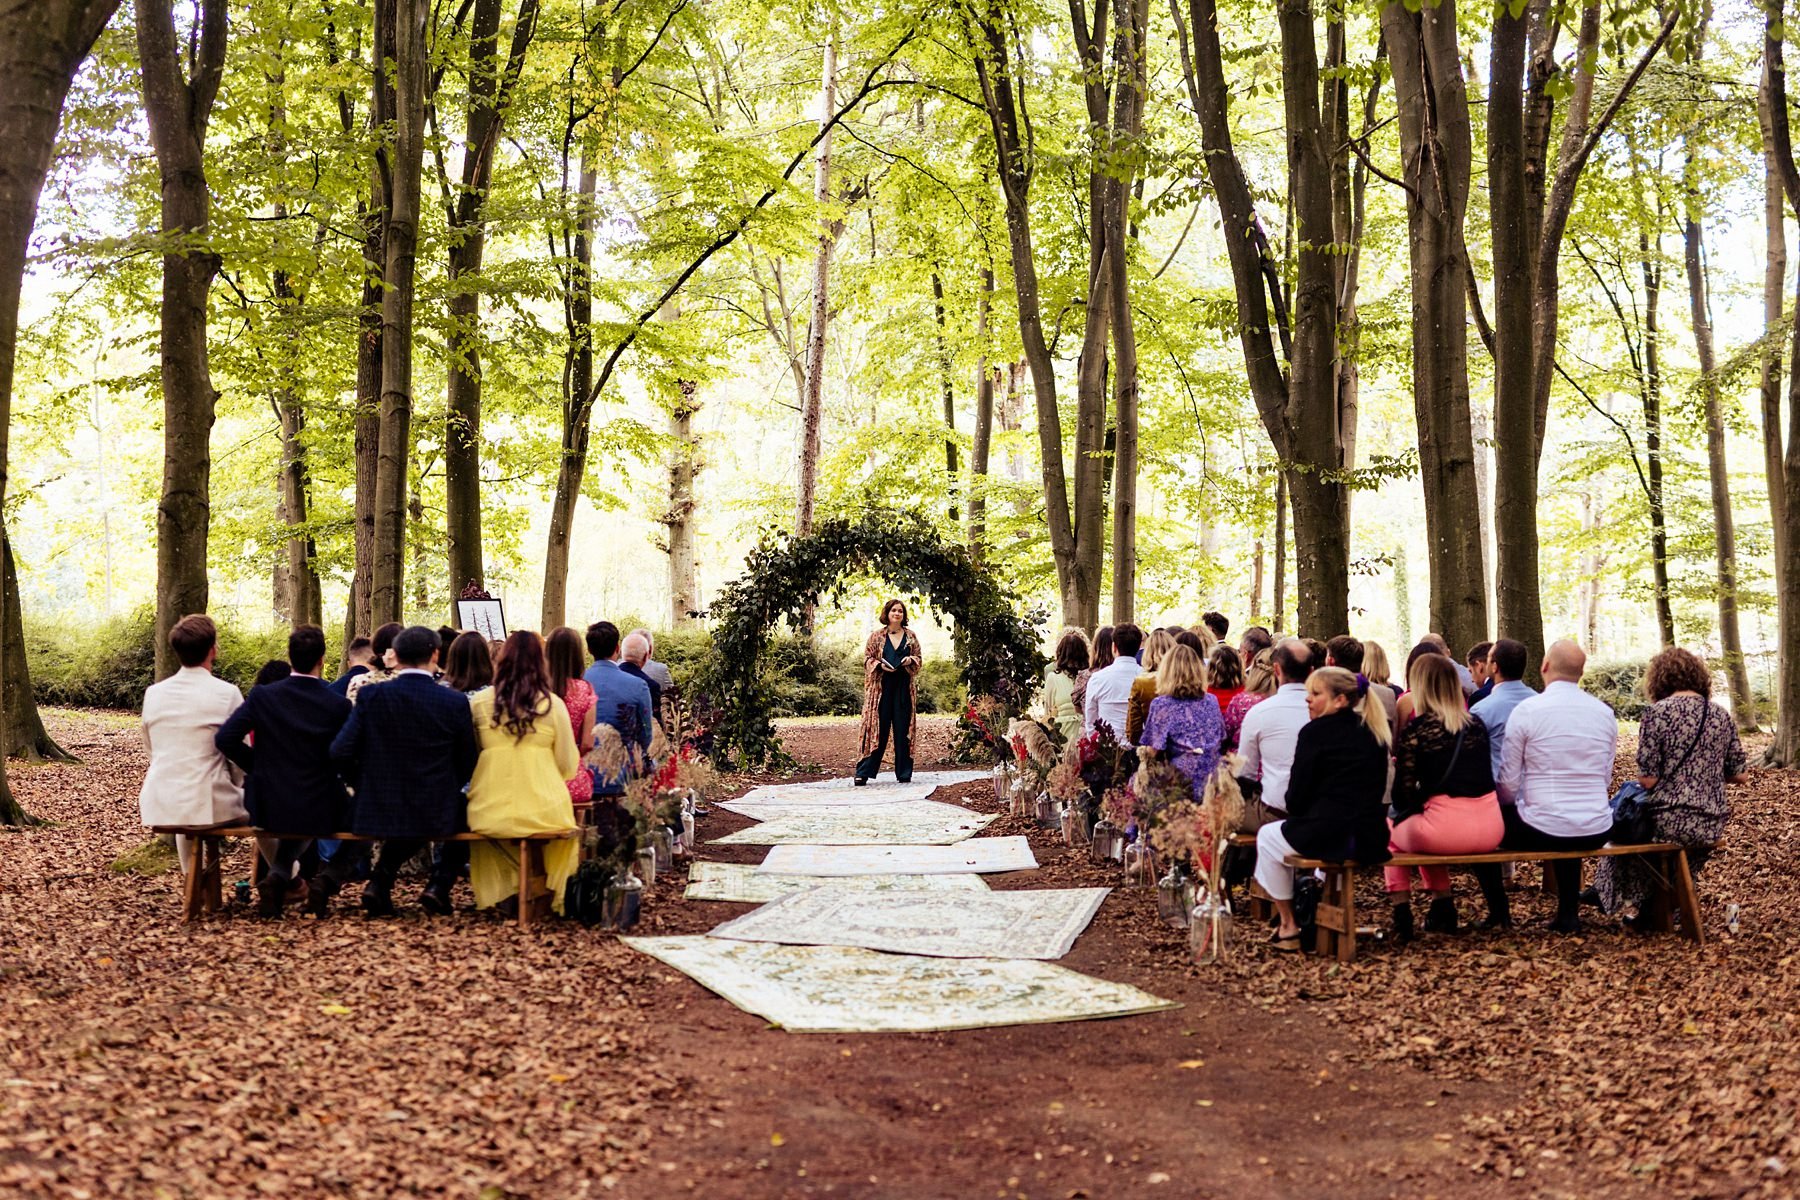 evenley-wood-garden-wedding-in-the-woods_0019.jpg